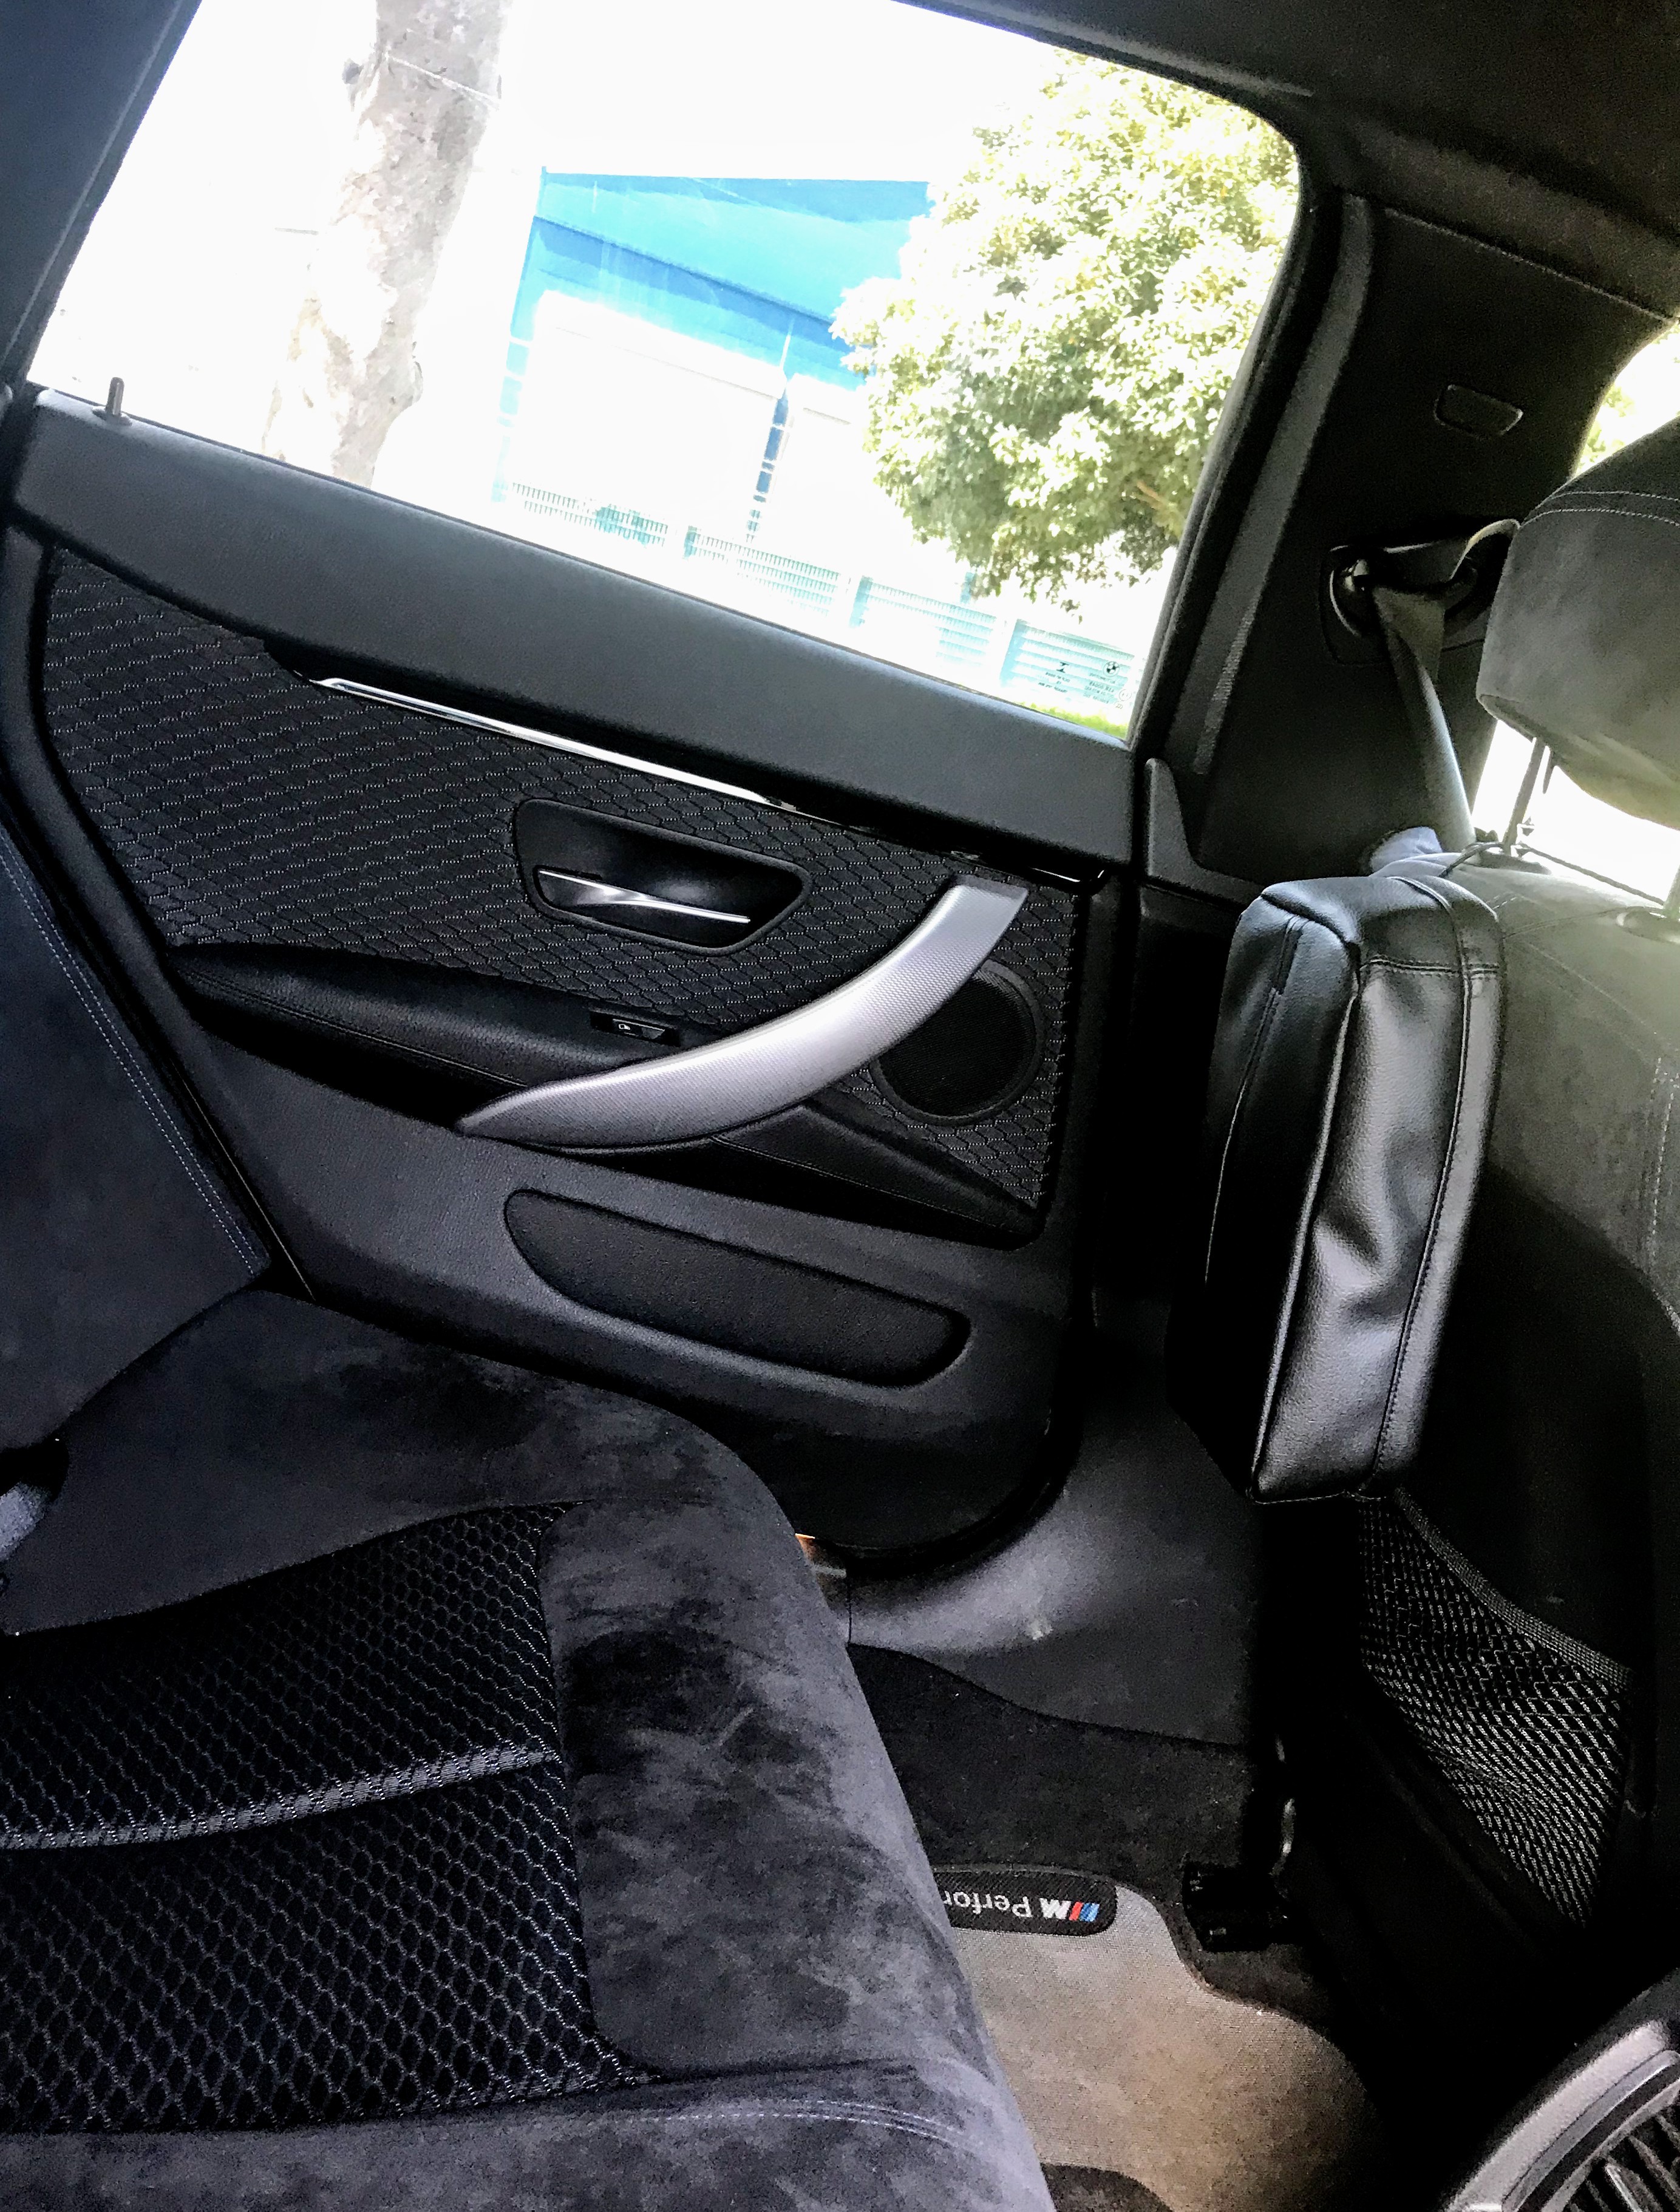 BMWの内装に似合う車用ブラックレザー調ティッシュカバーを購入して置いてみました＾＾